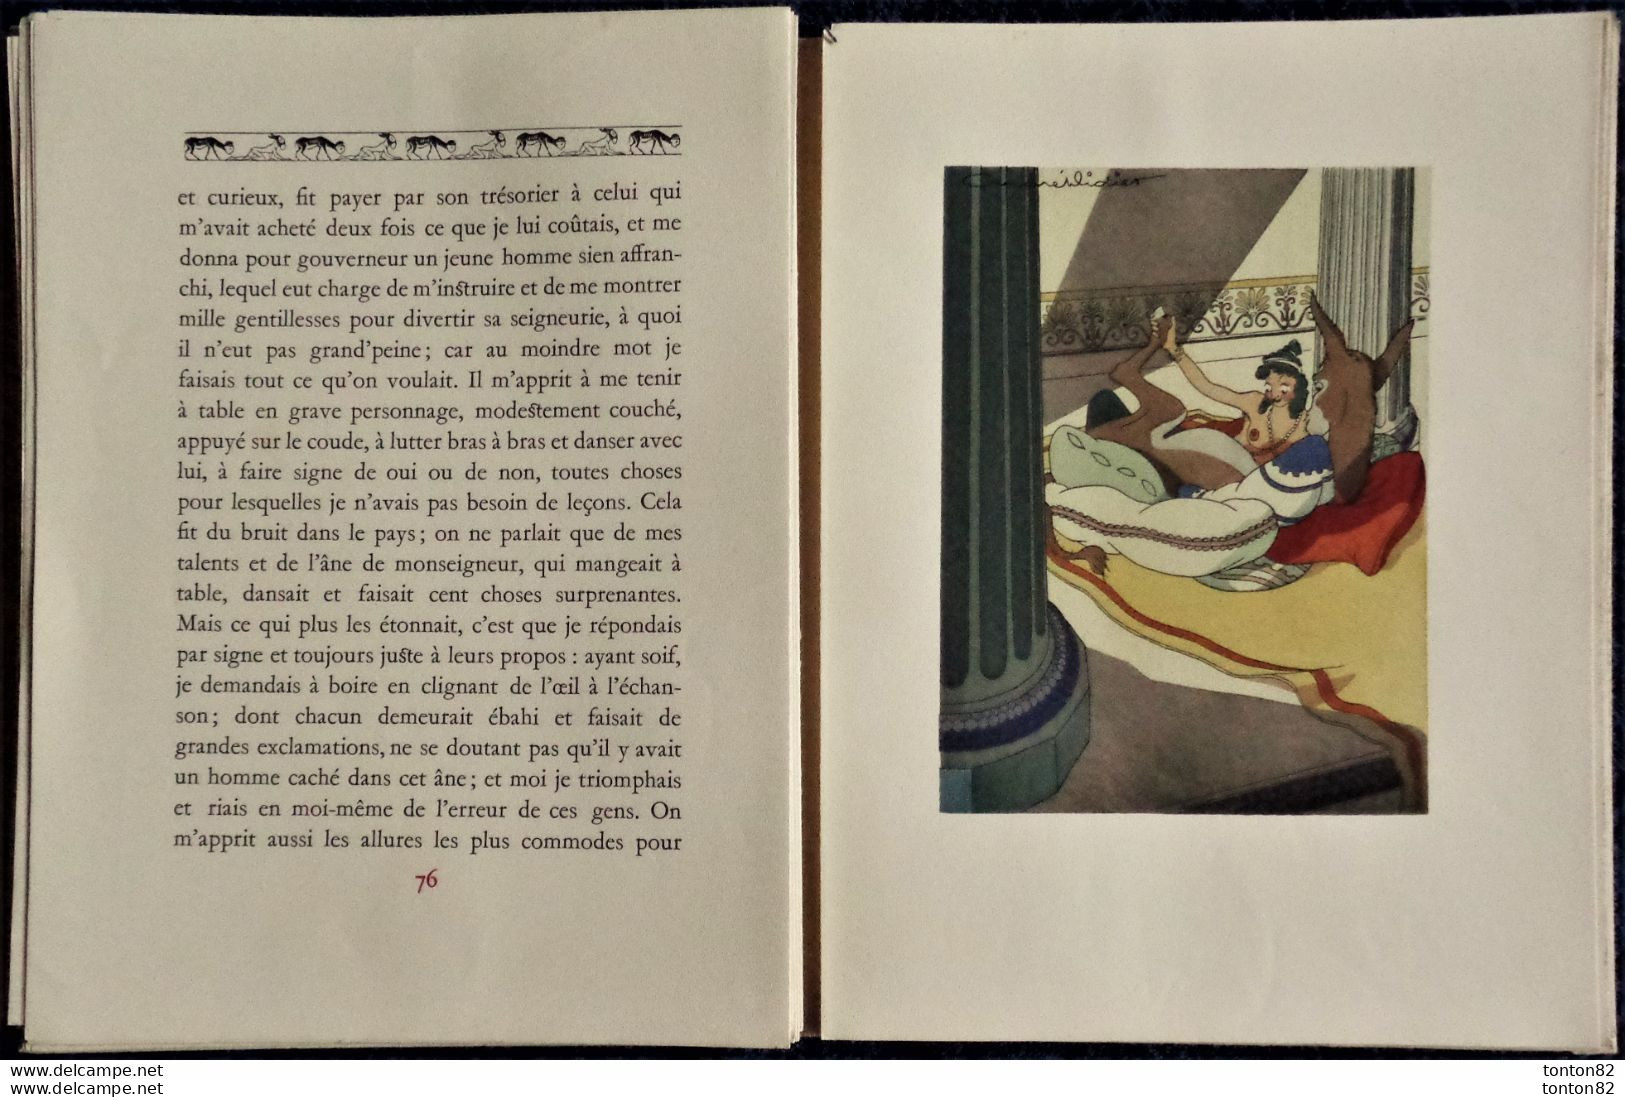 Lucius De Patras - L'âne de Lucius - Éditions de la Couronne - ( 1946 ) - Rare - Tirage très limité .